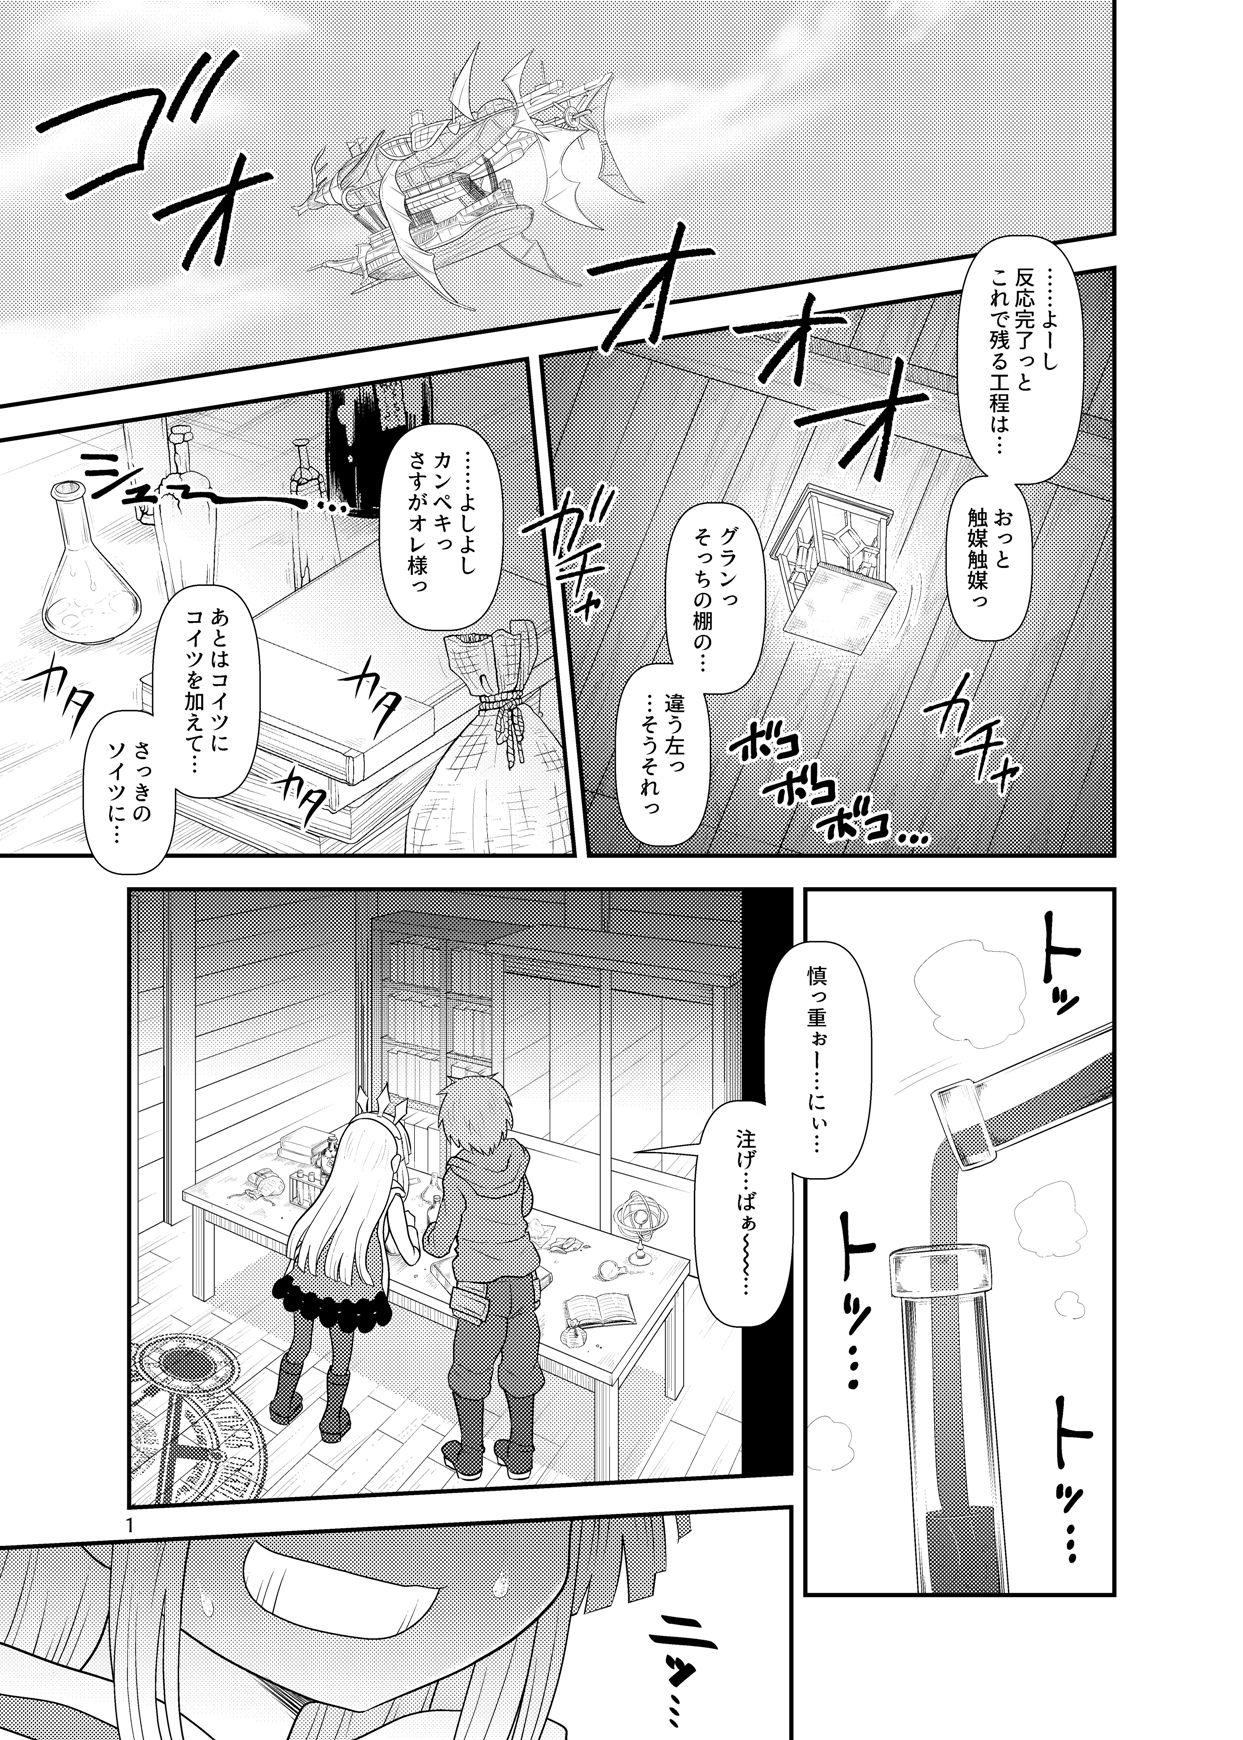 Mms Uchi no Dan no Seikatsu Jijou. - Granblue fantasy Gang Bang - Page 2